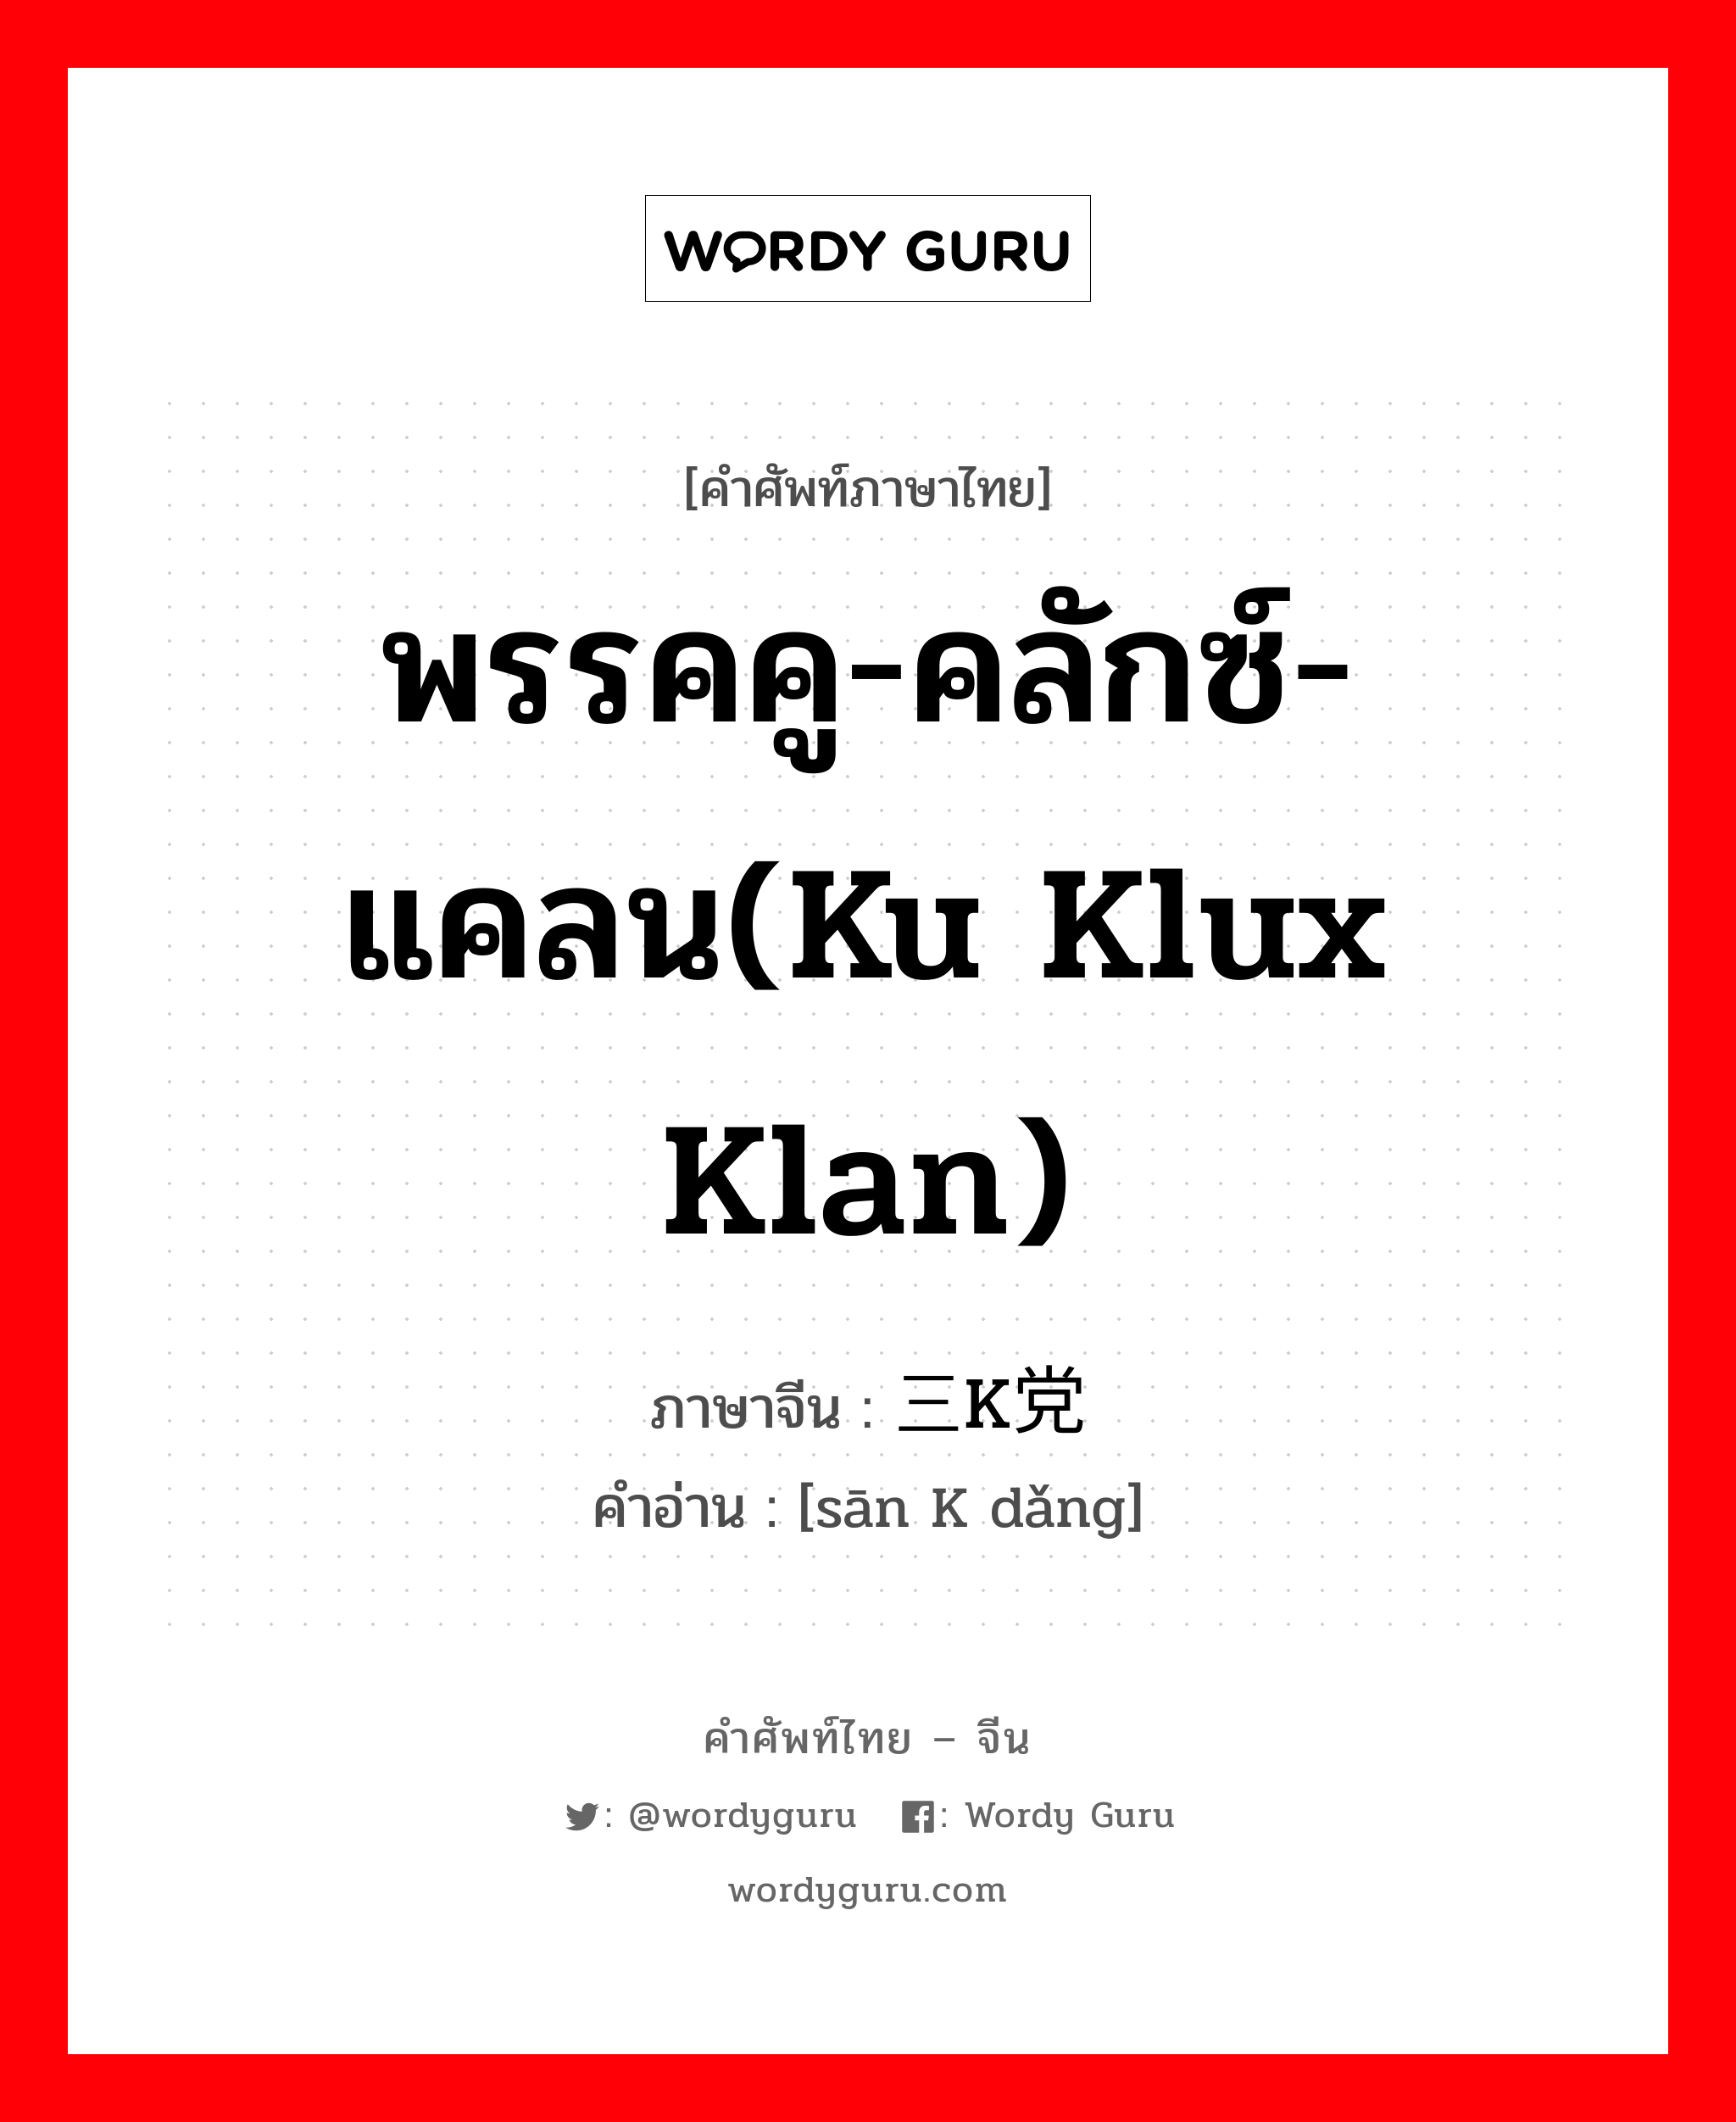 พรรคคู-คลักซ์-แคลน(Ku Klux Klan) ภาษาจีนคืออะไร, คำศัพท์ภาษาไทย - จีน พรรคคู-คลักซ์-แคลน(Ku Klux Klan) ภาษาจีน 三K党 คำอ่าน [sān K dǎng]